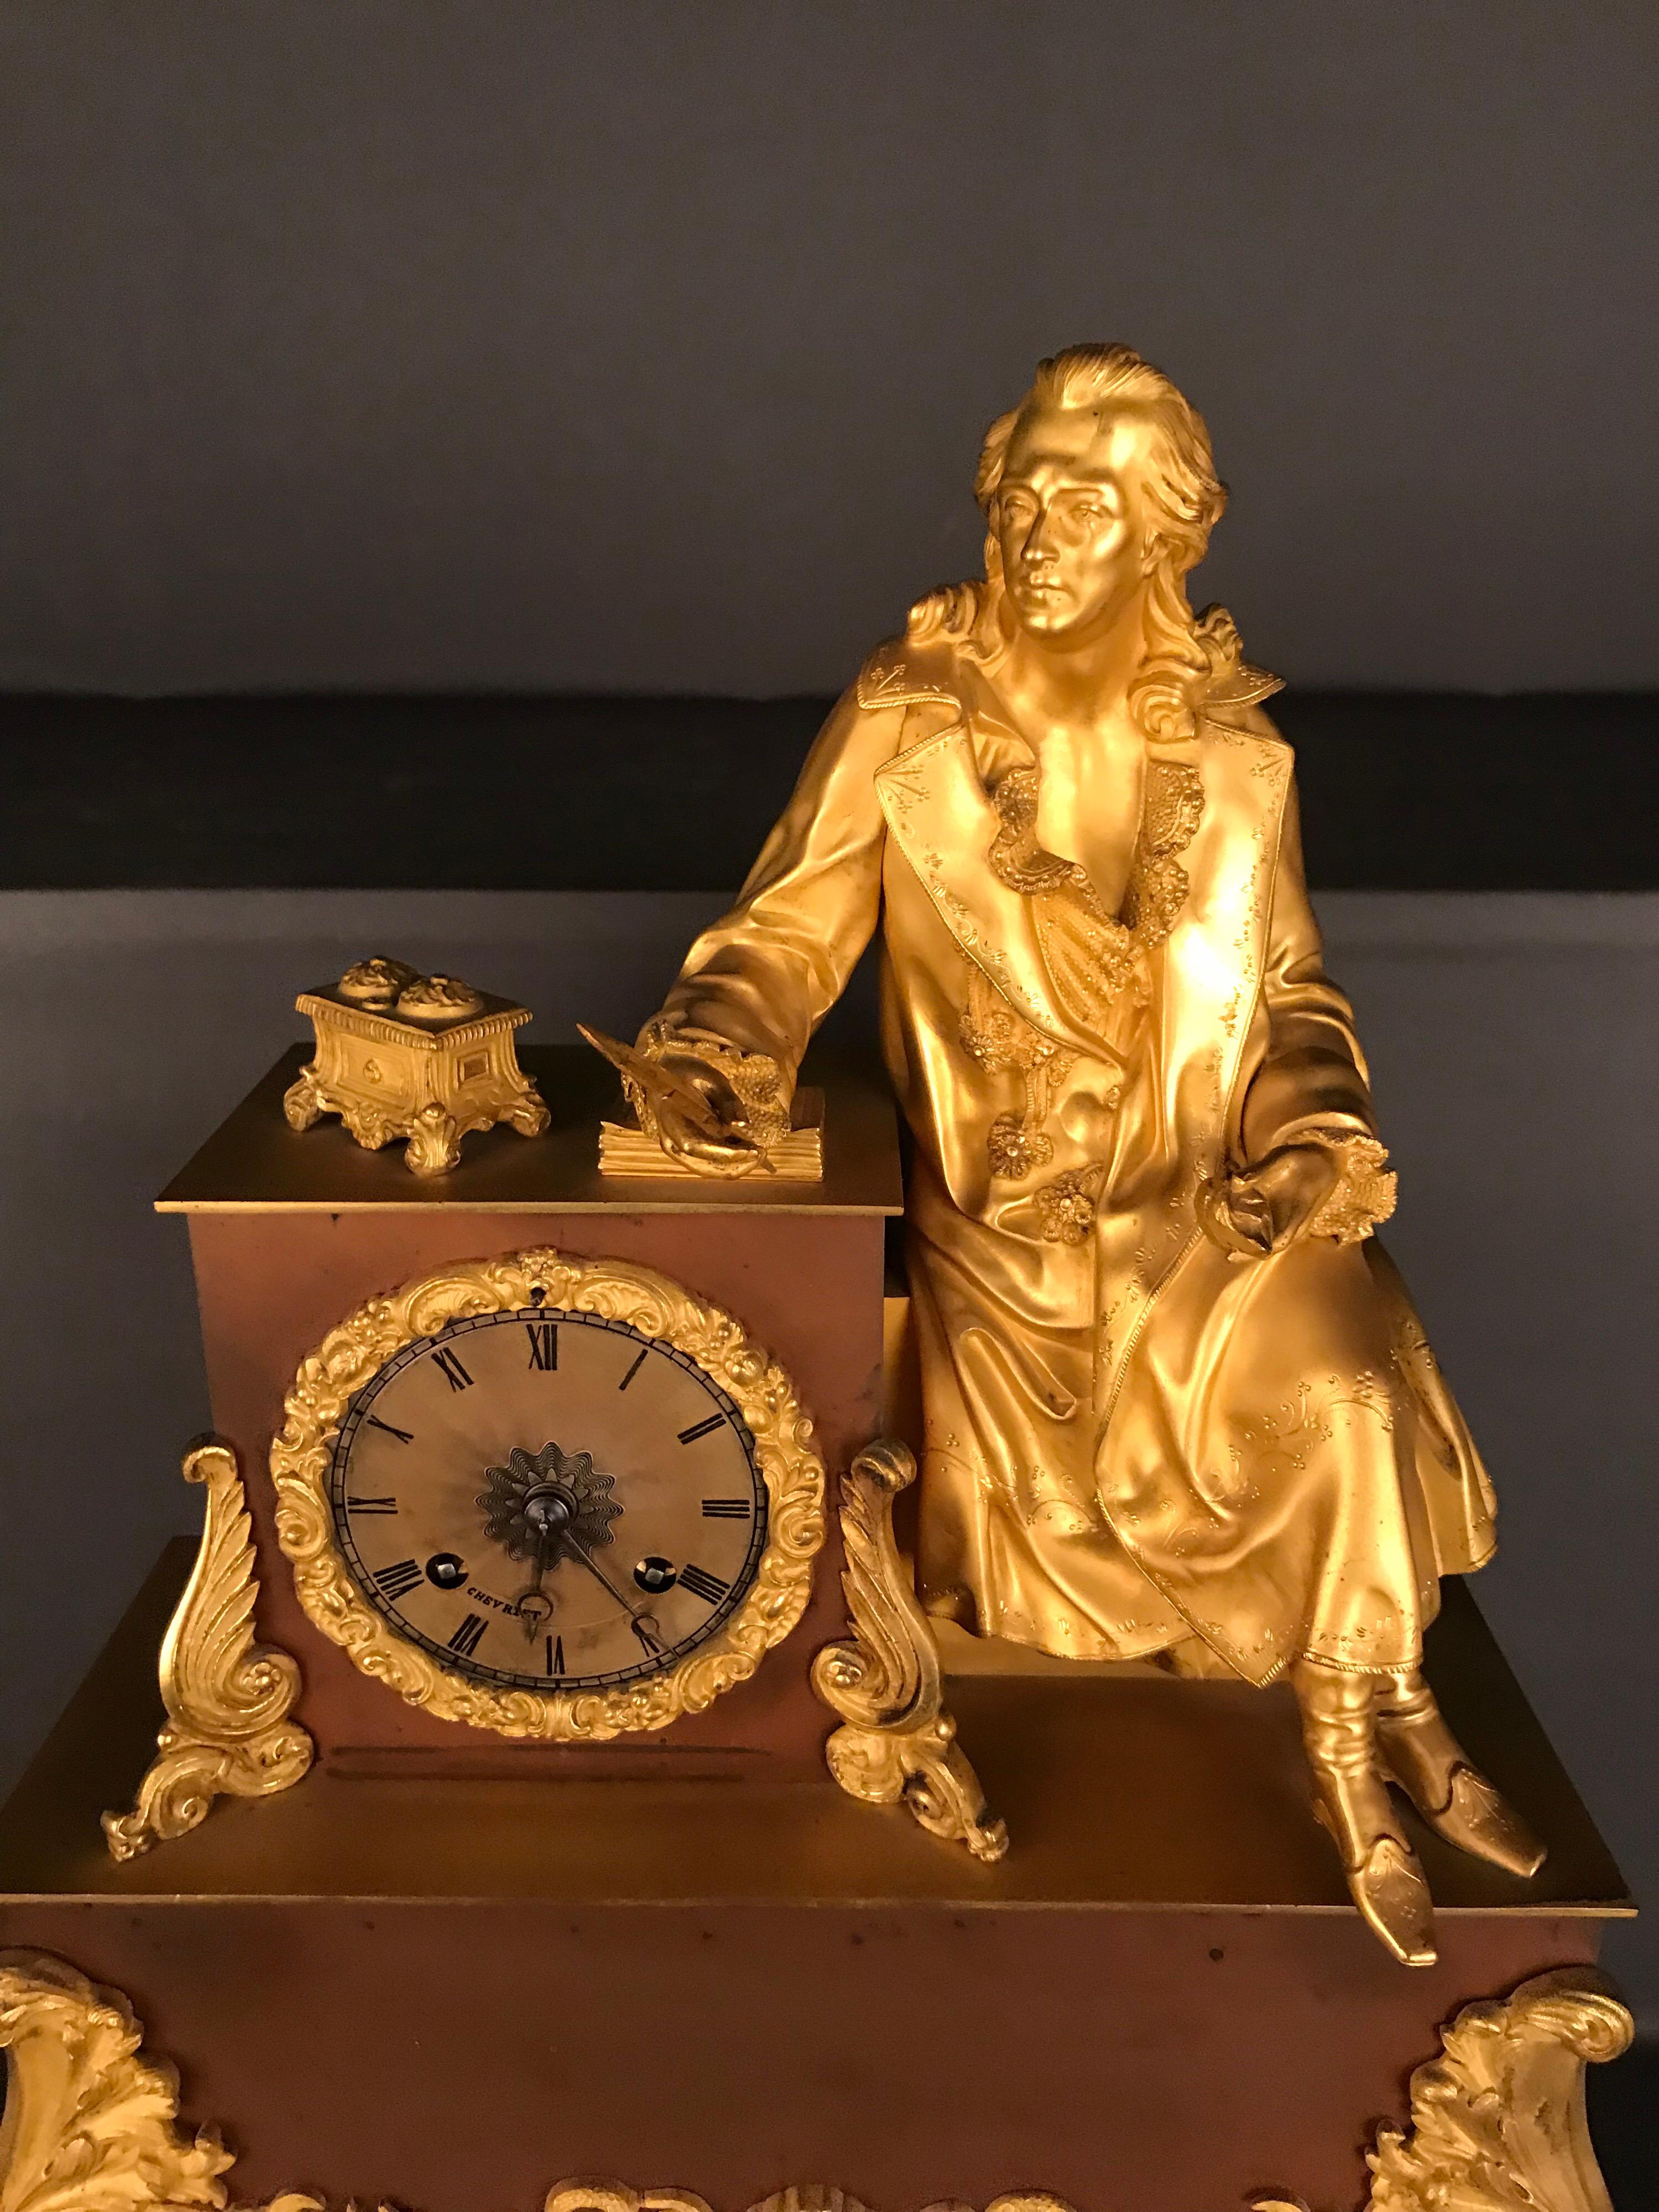 Sehr schönes Pendel, um 1870
Feuervergoldete Messinguhr
Die Uhr ist von cherviet
Napoleon 3
Das Uhrwerk muss auf seine Genauigkeit überprüft werden
Sitzender Dichter mit einem Stift in der Hand.